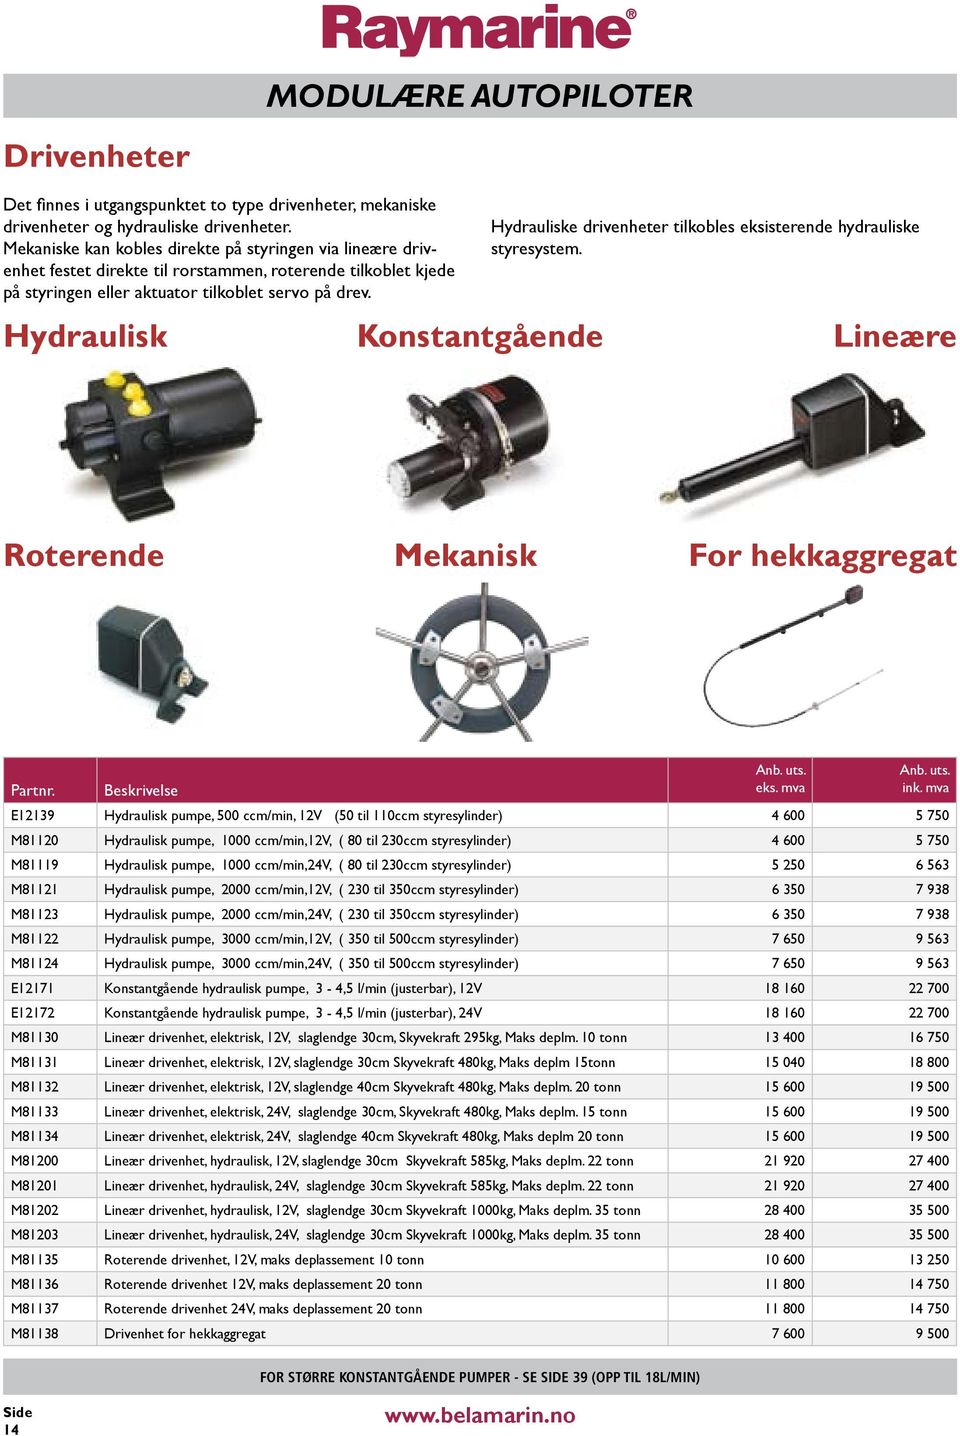 Hydrauliske drivenheter tilkobles eksisterende hydrauliske styresystem.